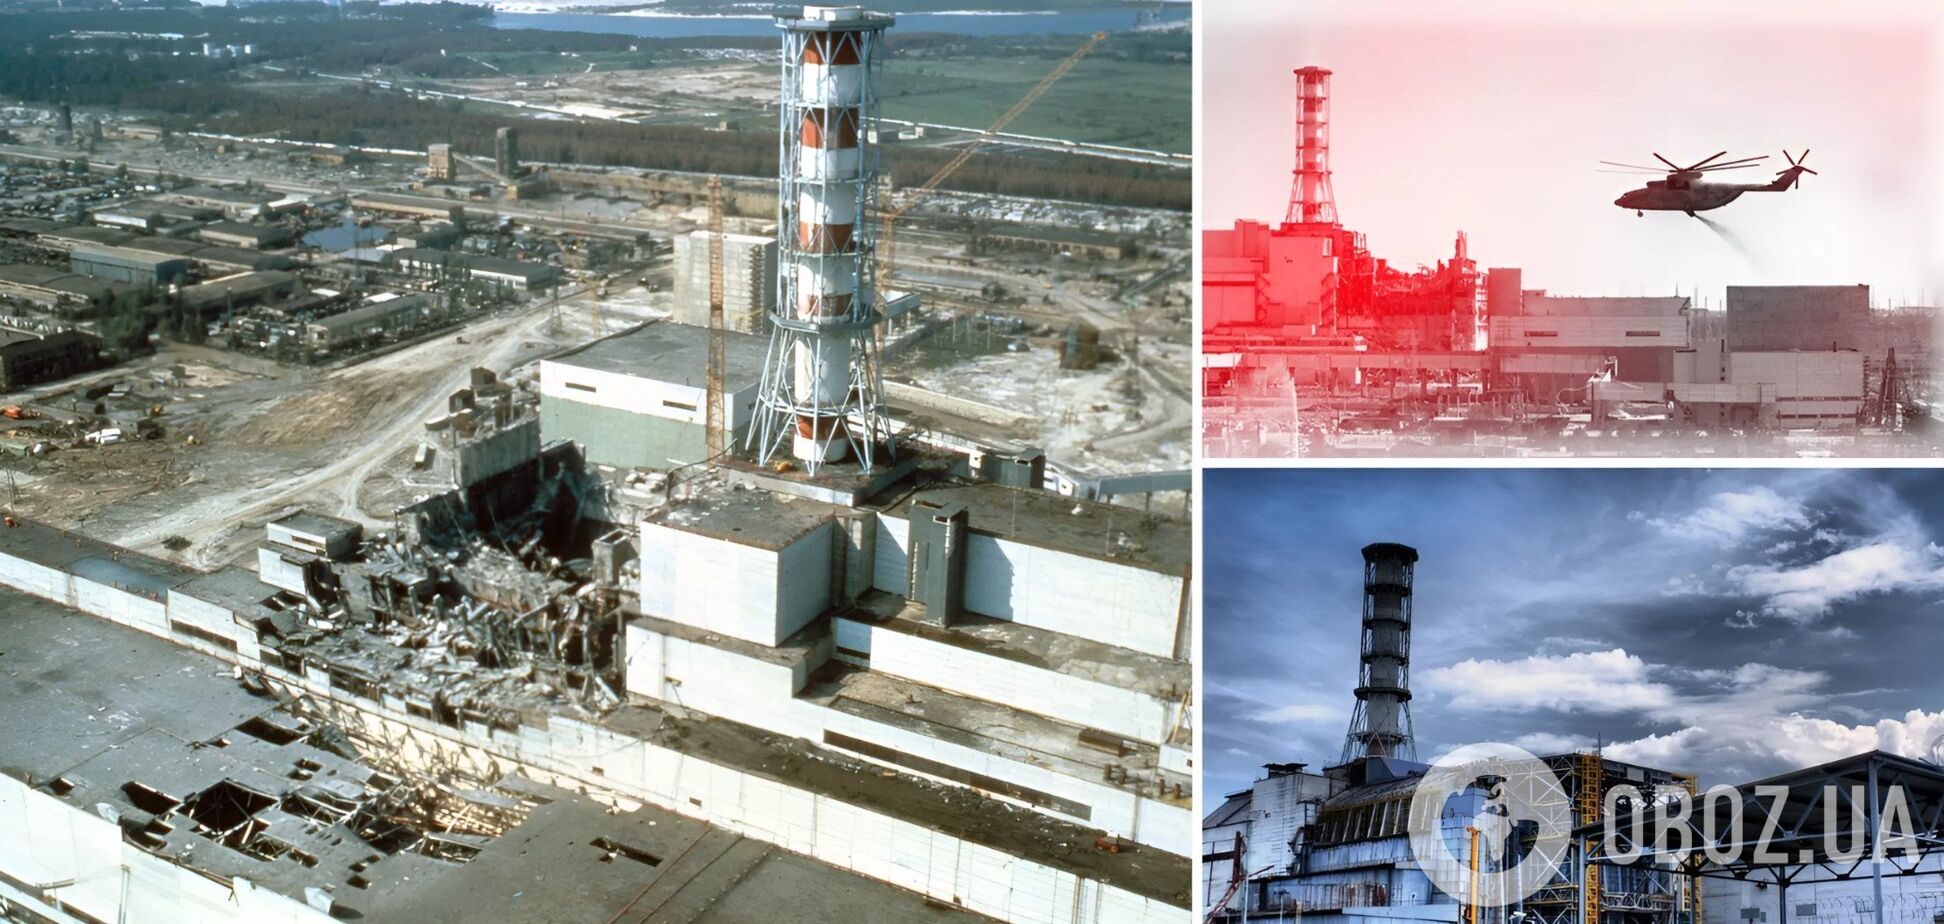 Чернобыльская катастрофа: малоизвестные факты и мифы об аварии